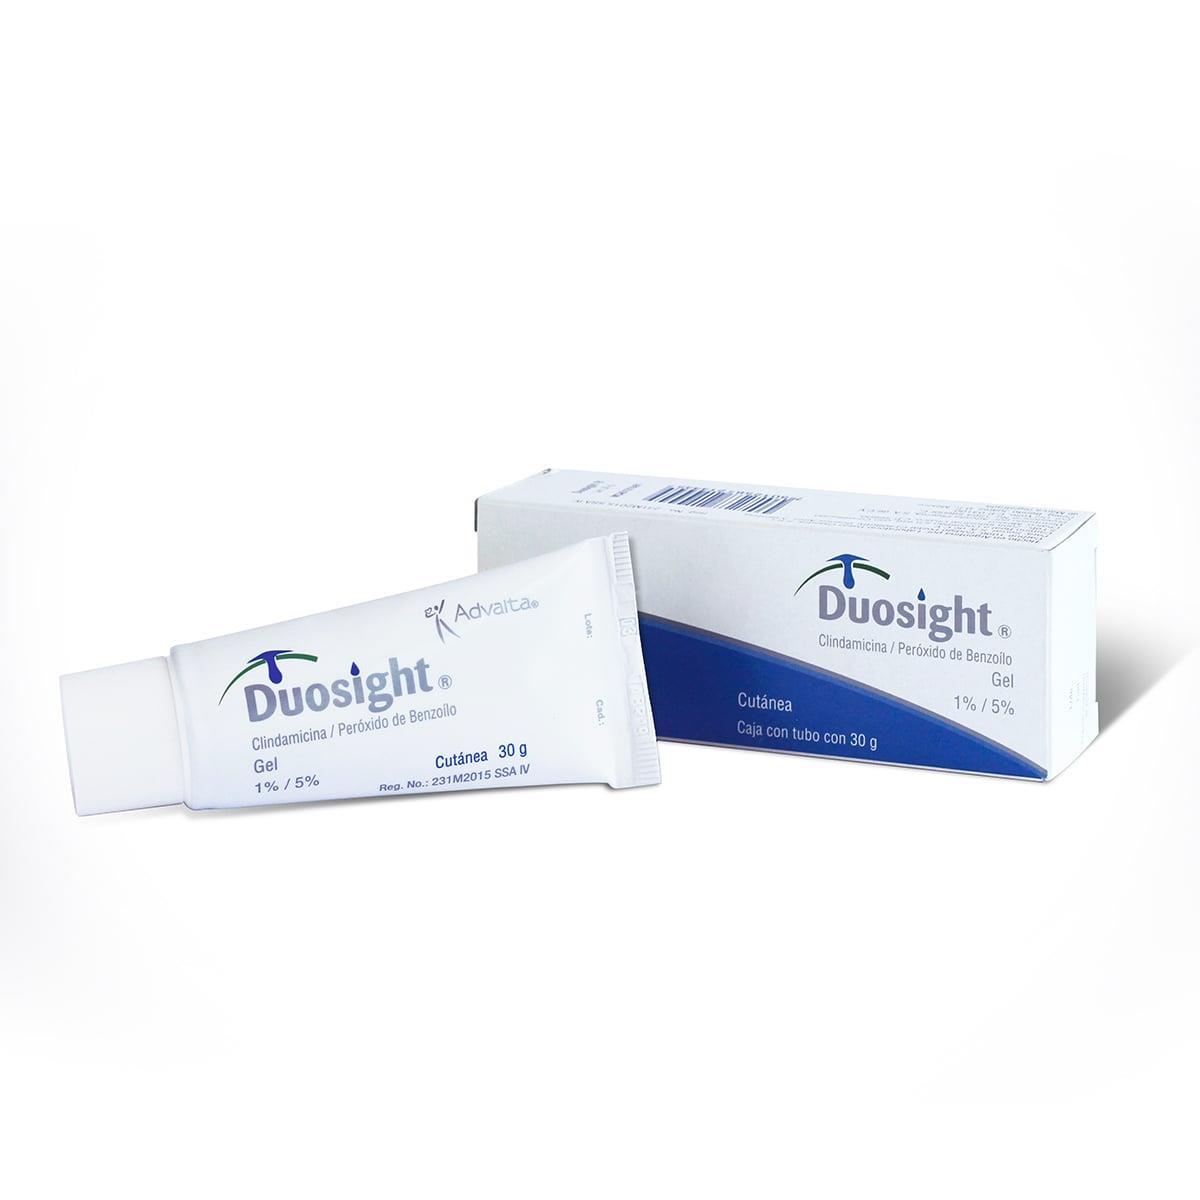 Esta indicado para el tratamiento acné vulgar, inflamatorio o papulopustuloso.<br/><br/>Caja de cartón con tubo con 30 g. 